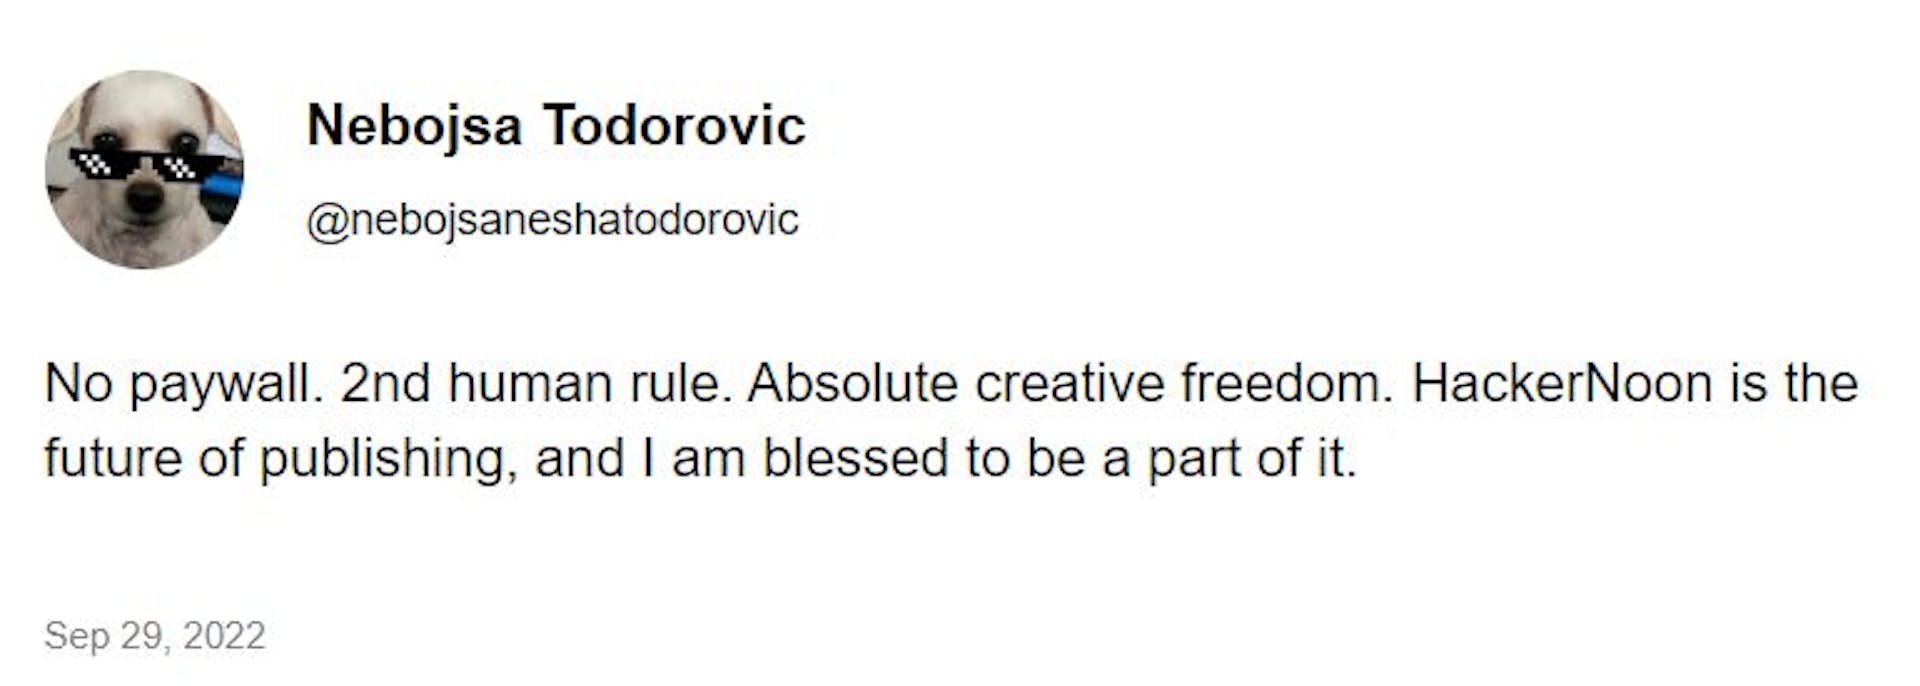 Lời khai của Nesha Todorovic trên HackerNoon, tháng 9 năm 2022.